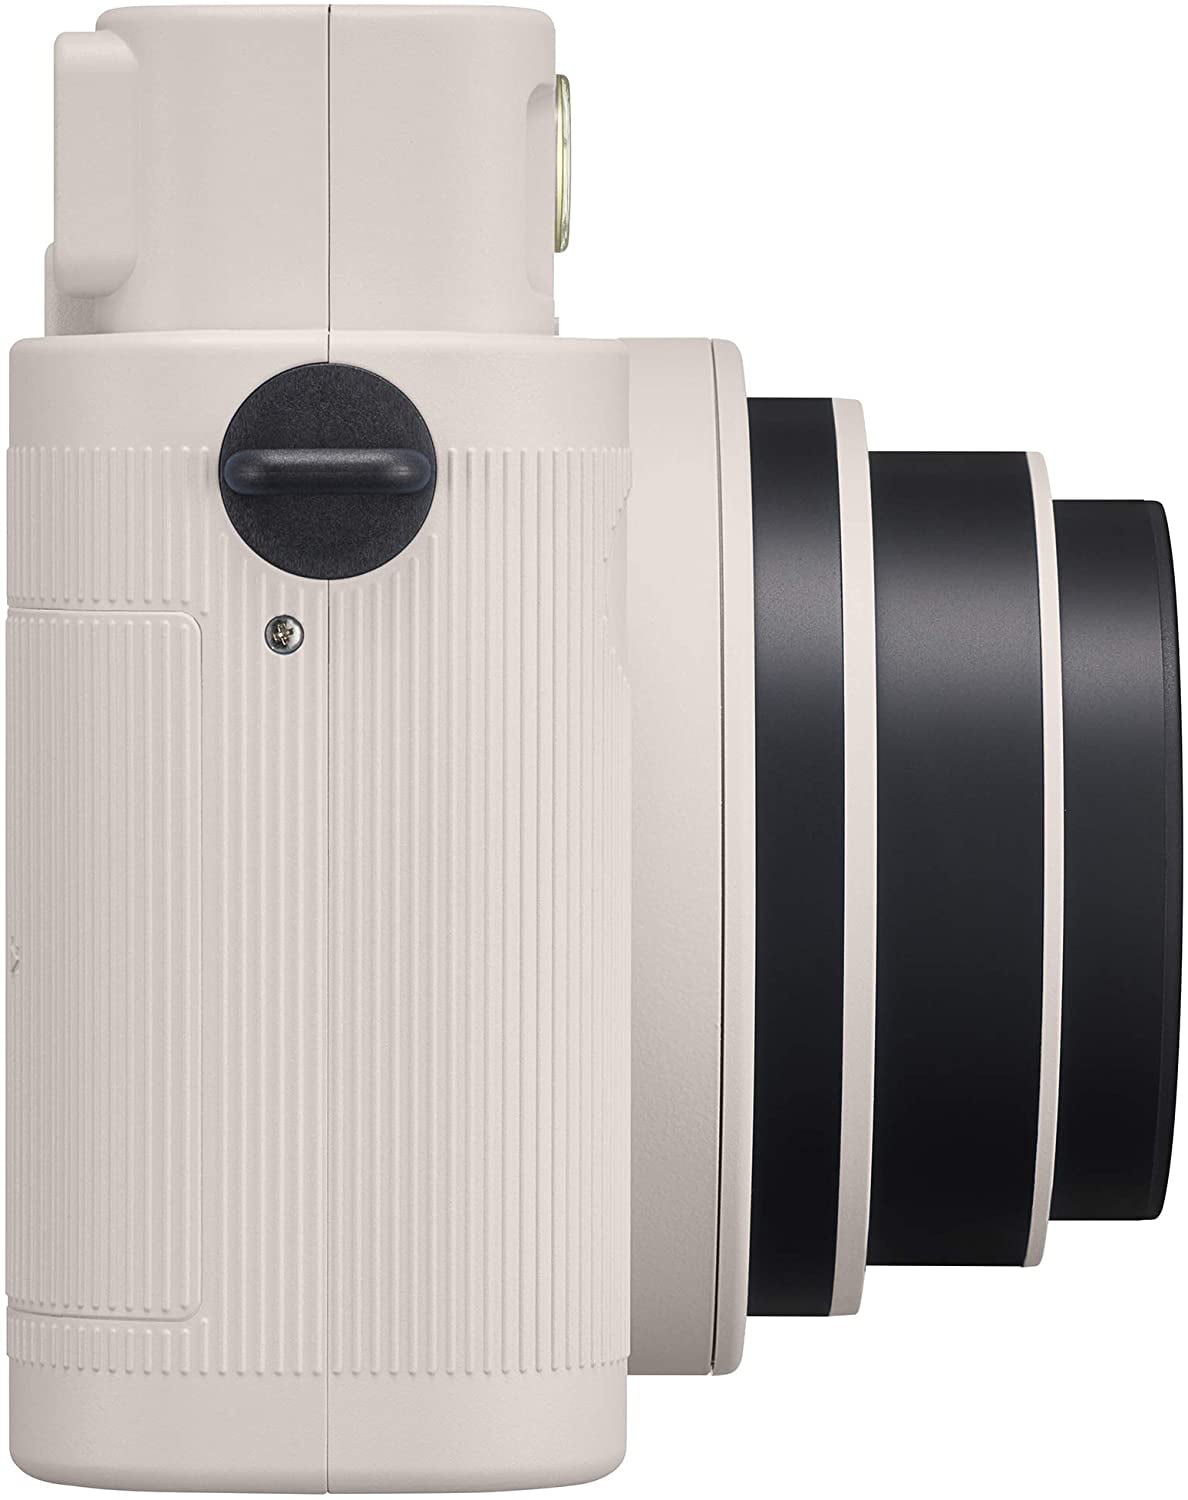 Fujifilm INSTAX SQUARE SQ1 instant camera - White - Walmart.com